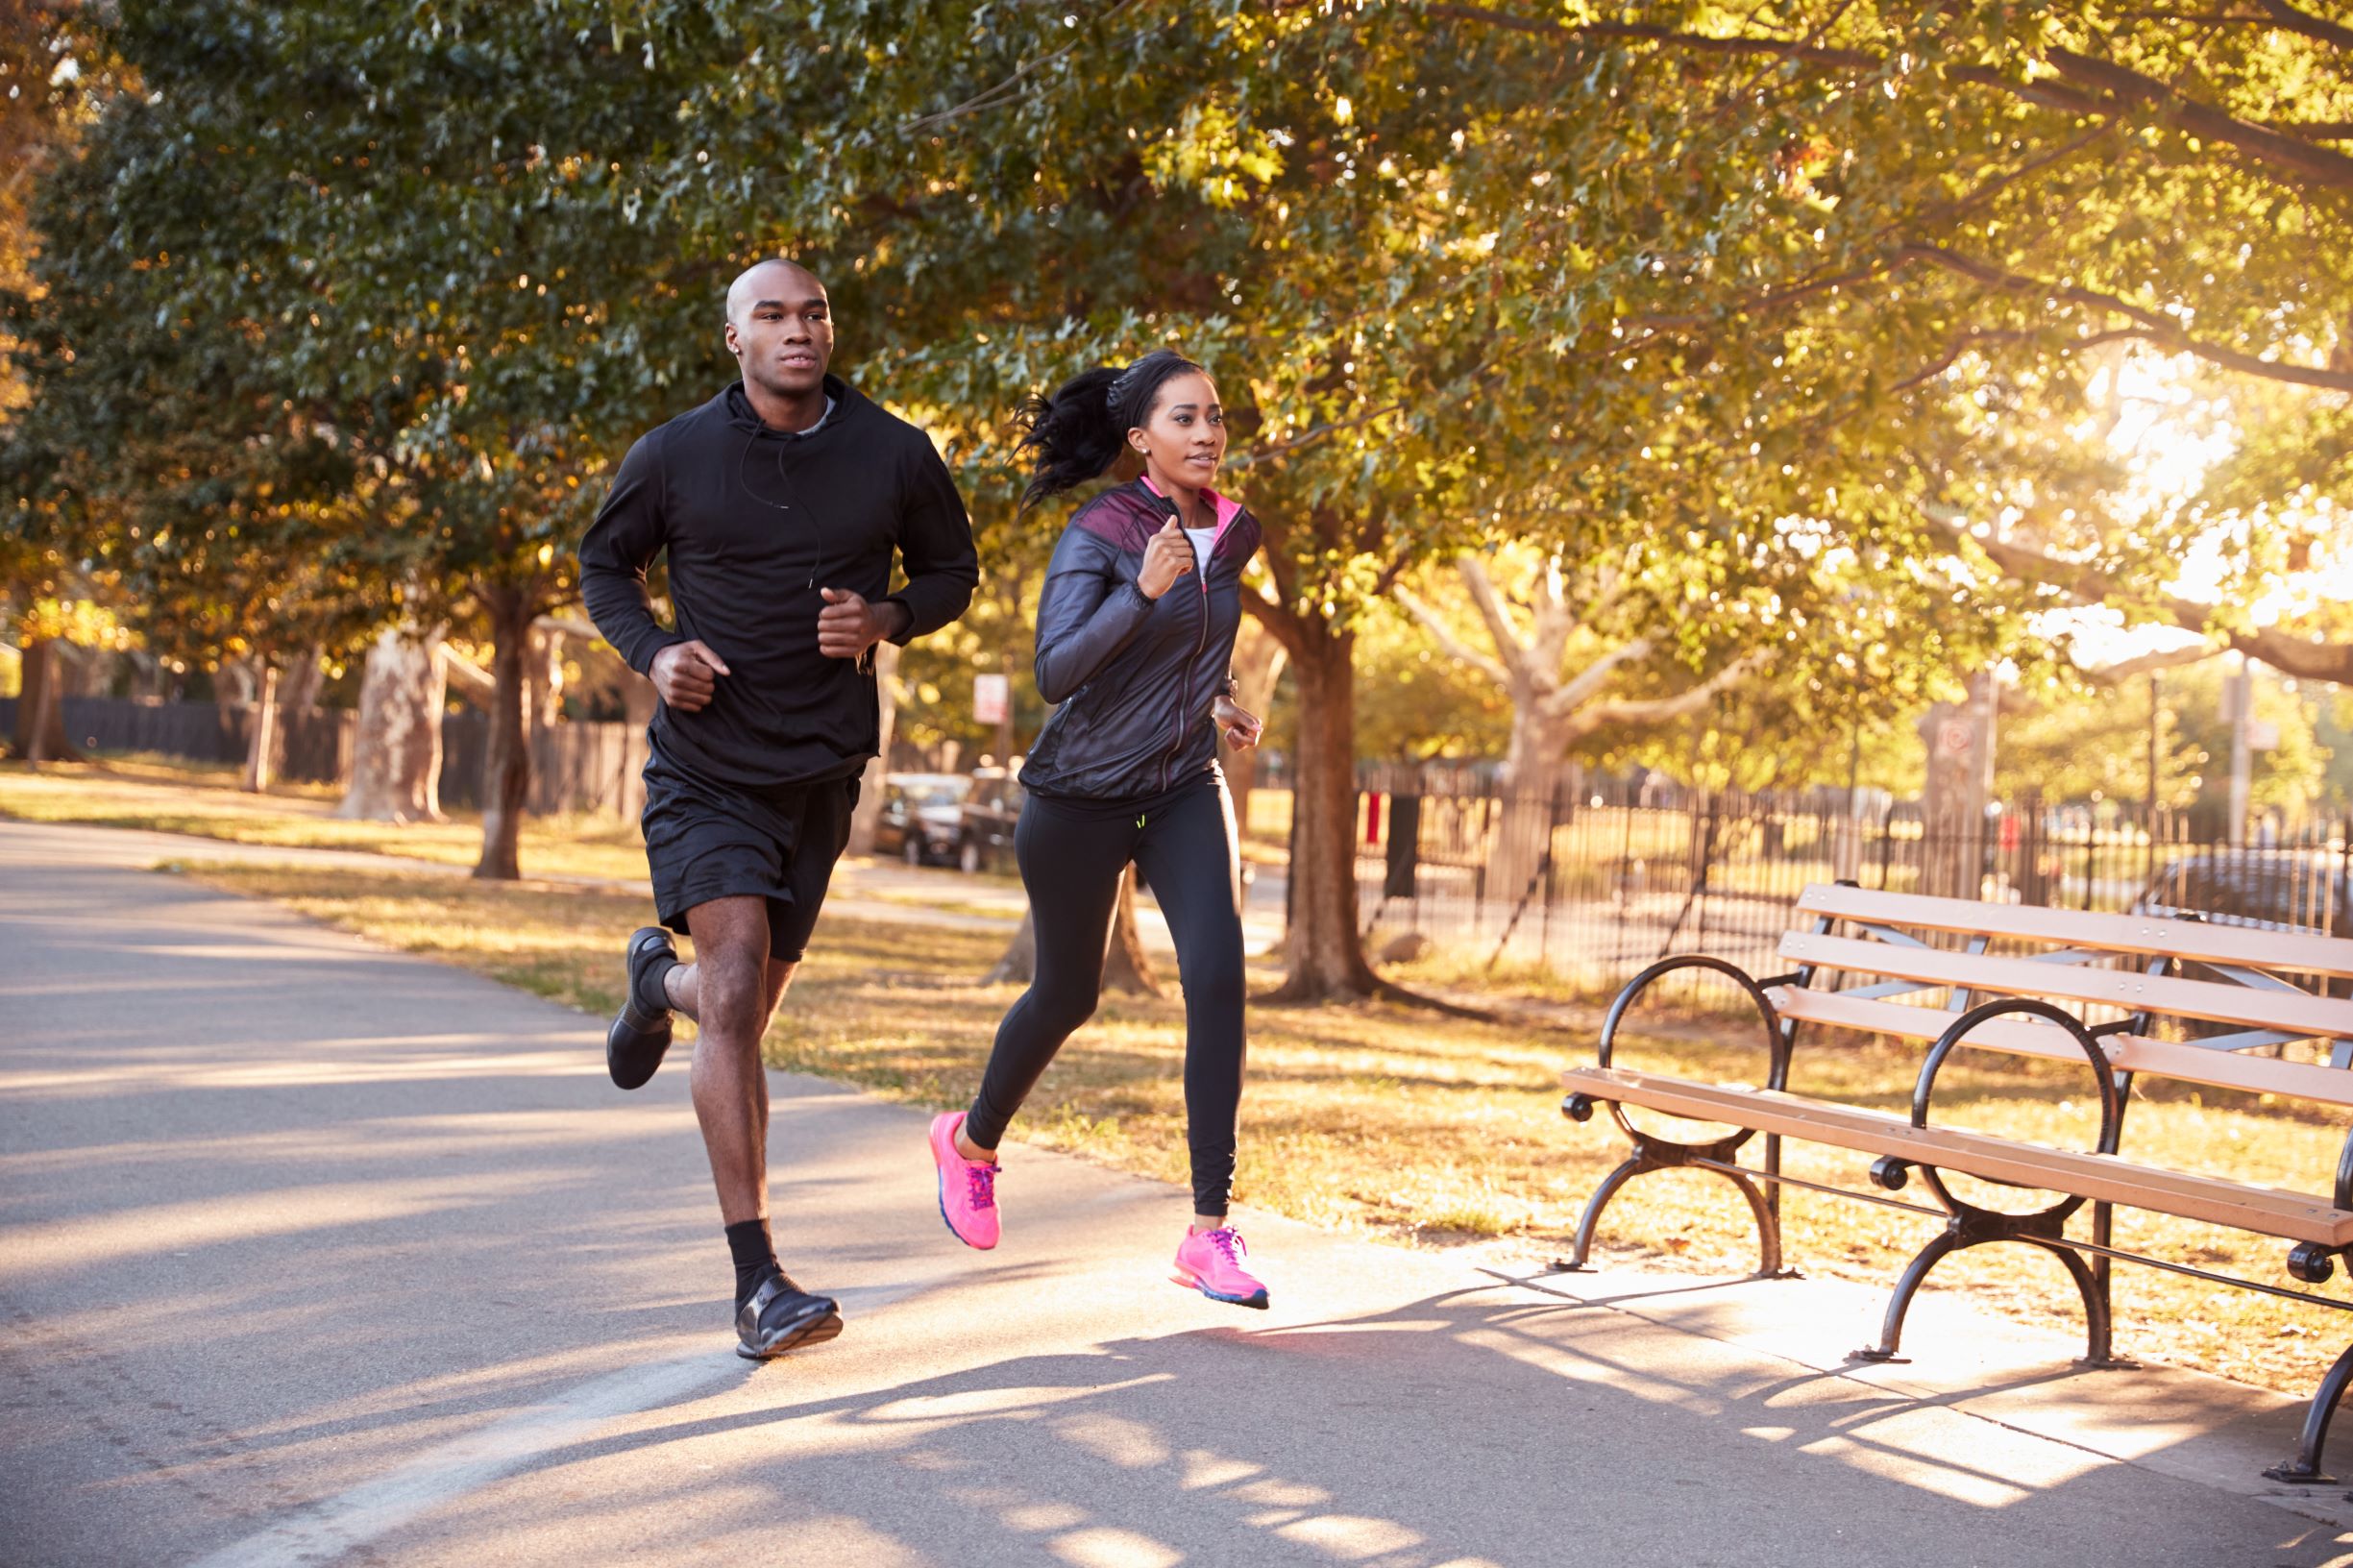 File:Exercise-man-woman-running.jpg